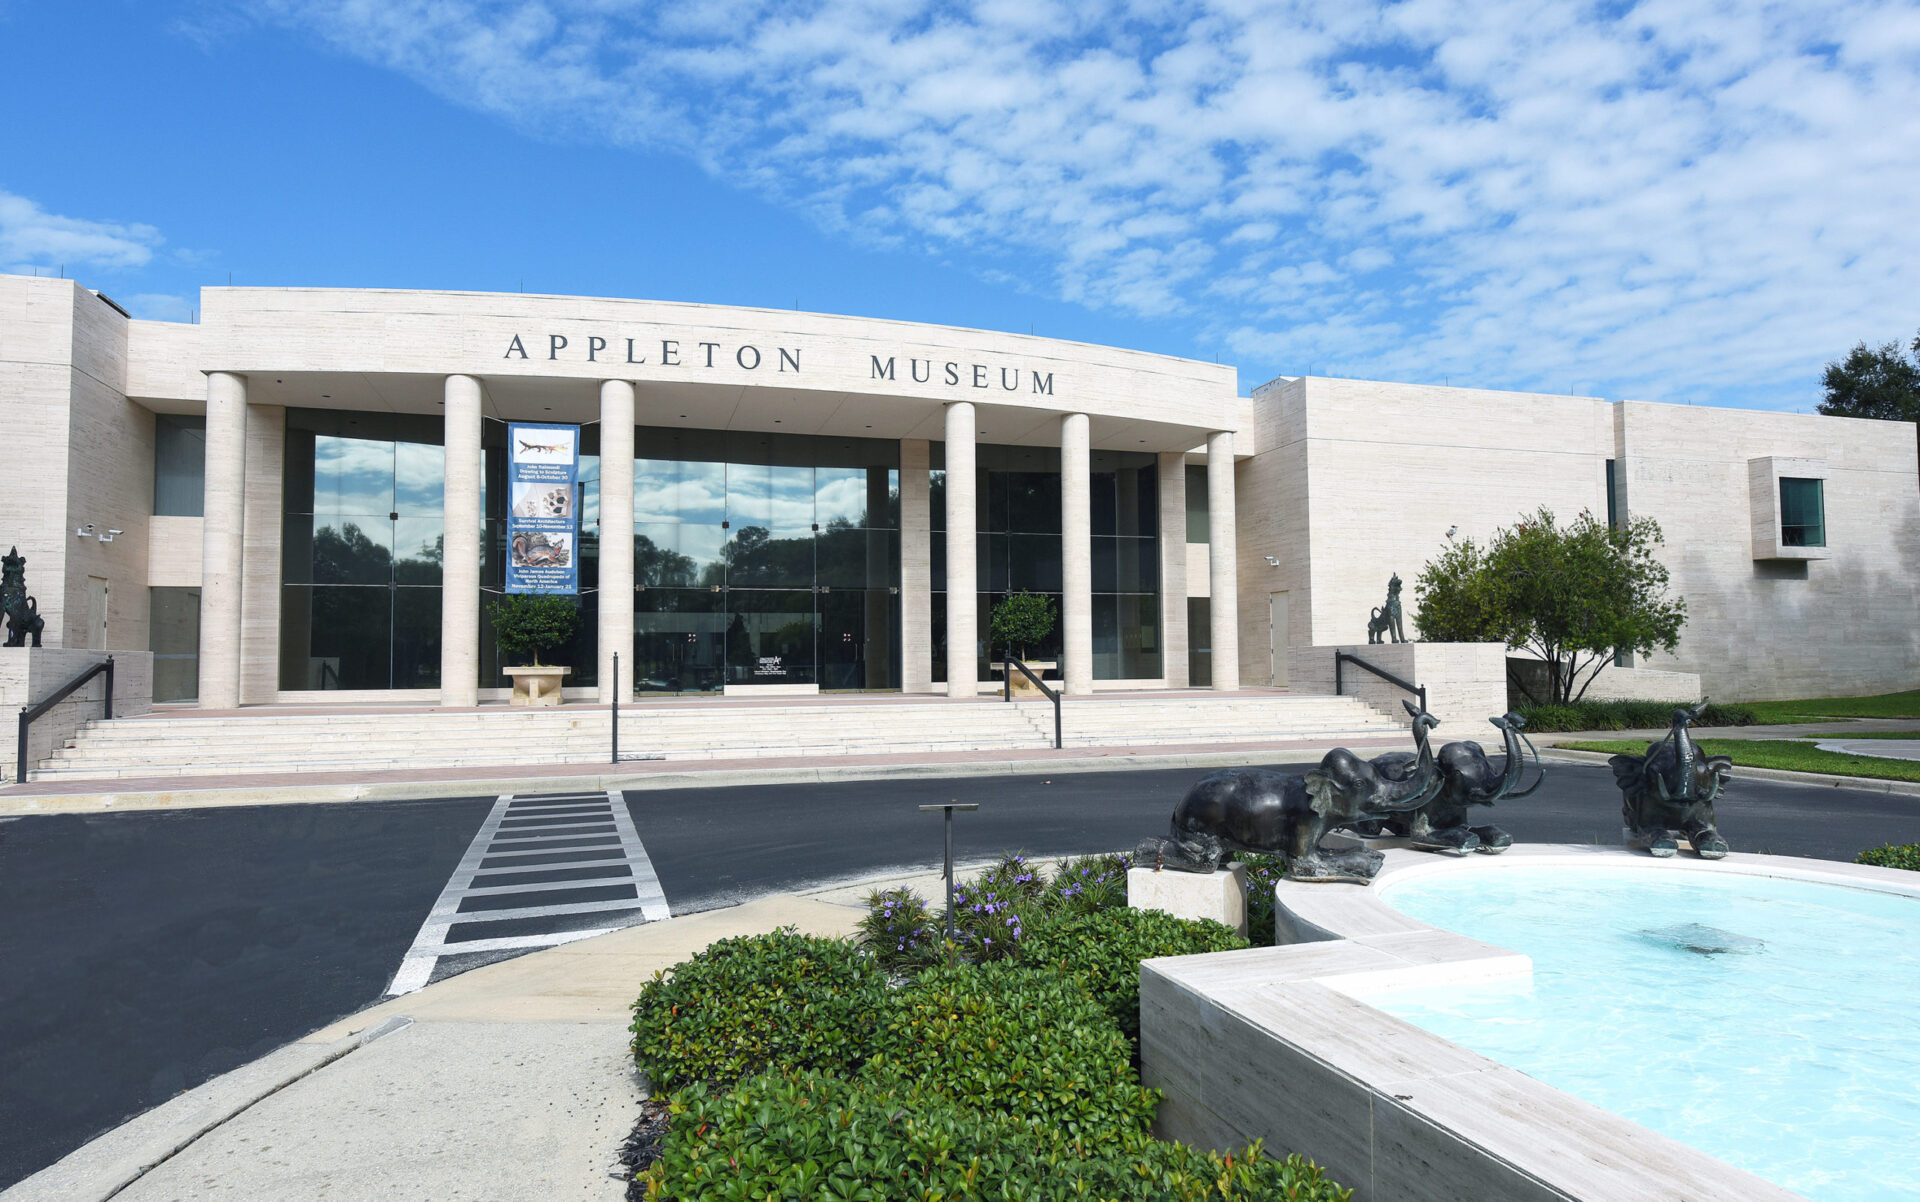 Appleton Museum of Art in Ocala, FL